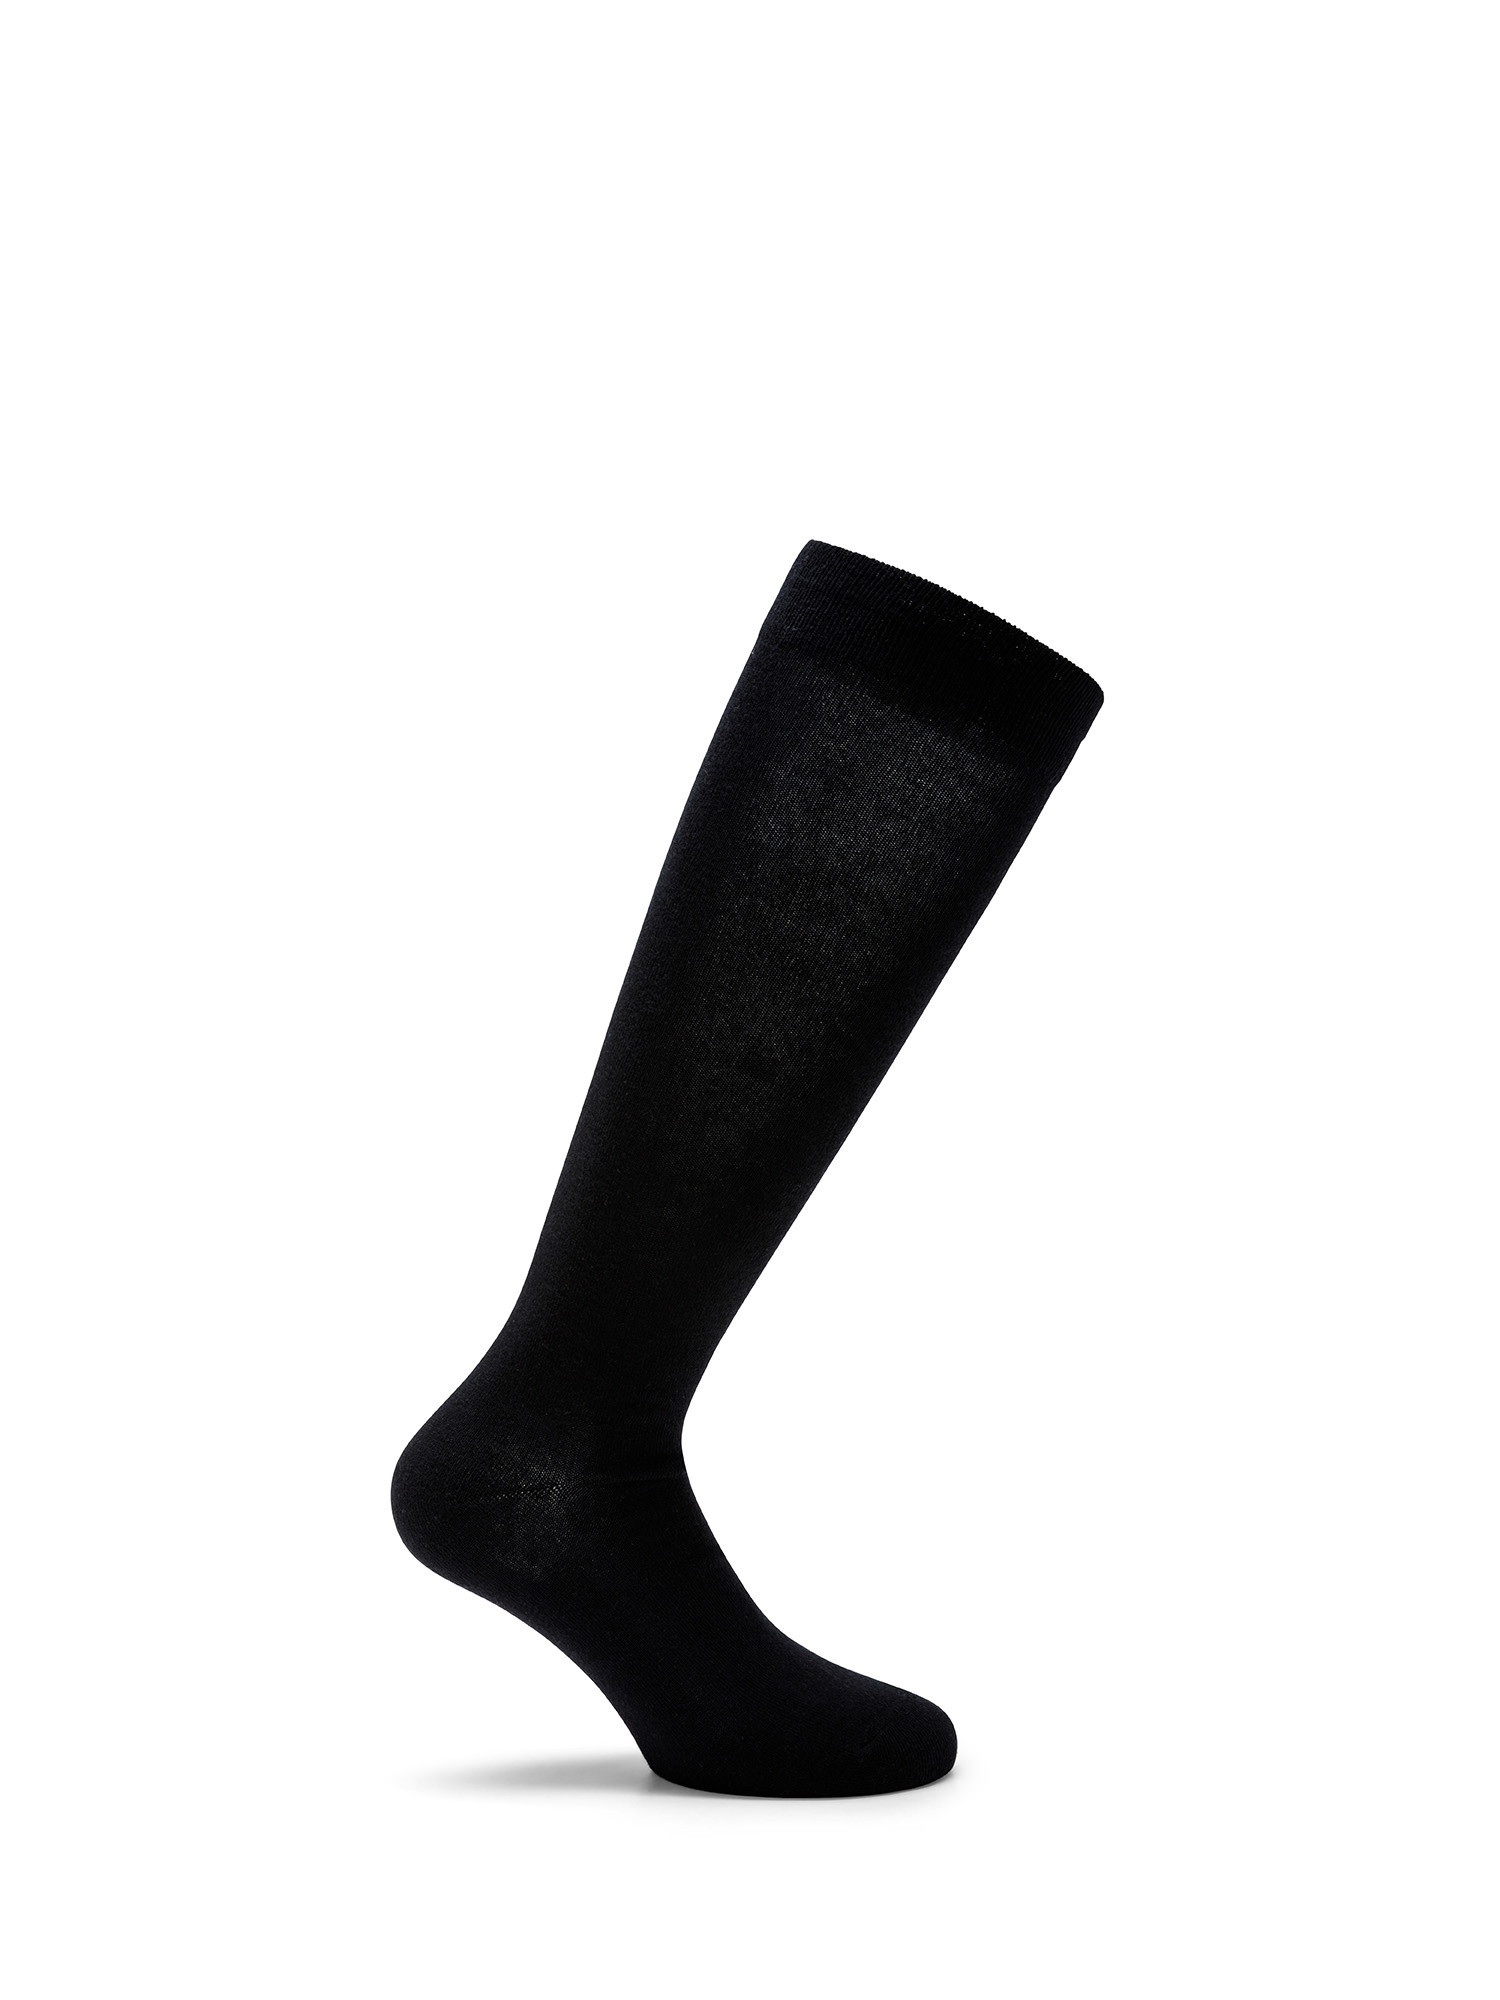 Luca D'Altieri - Set of 3 patterned long socks, Dark Blue, large image number 3